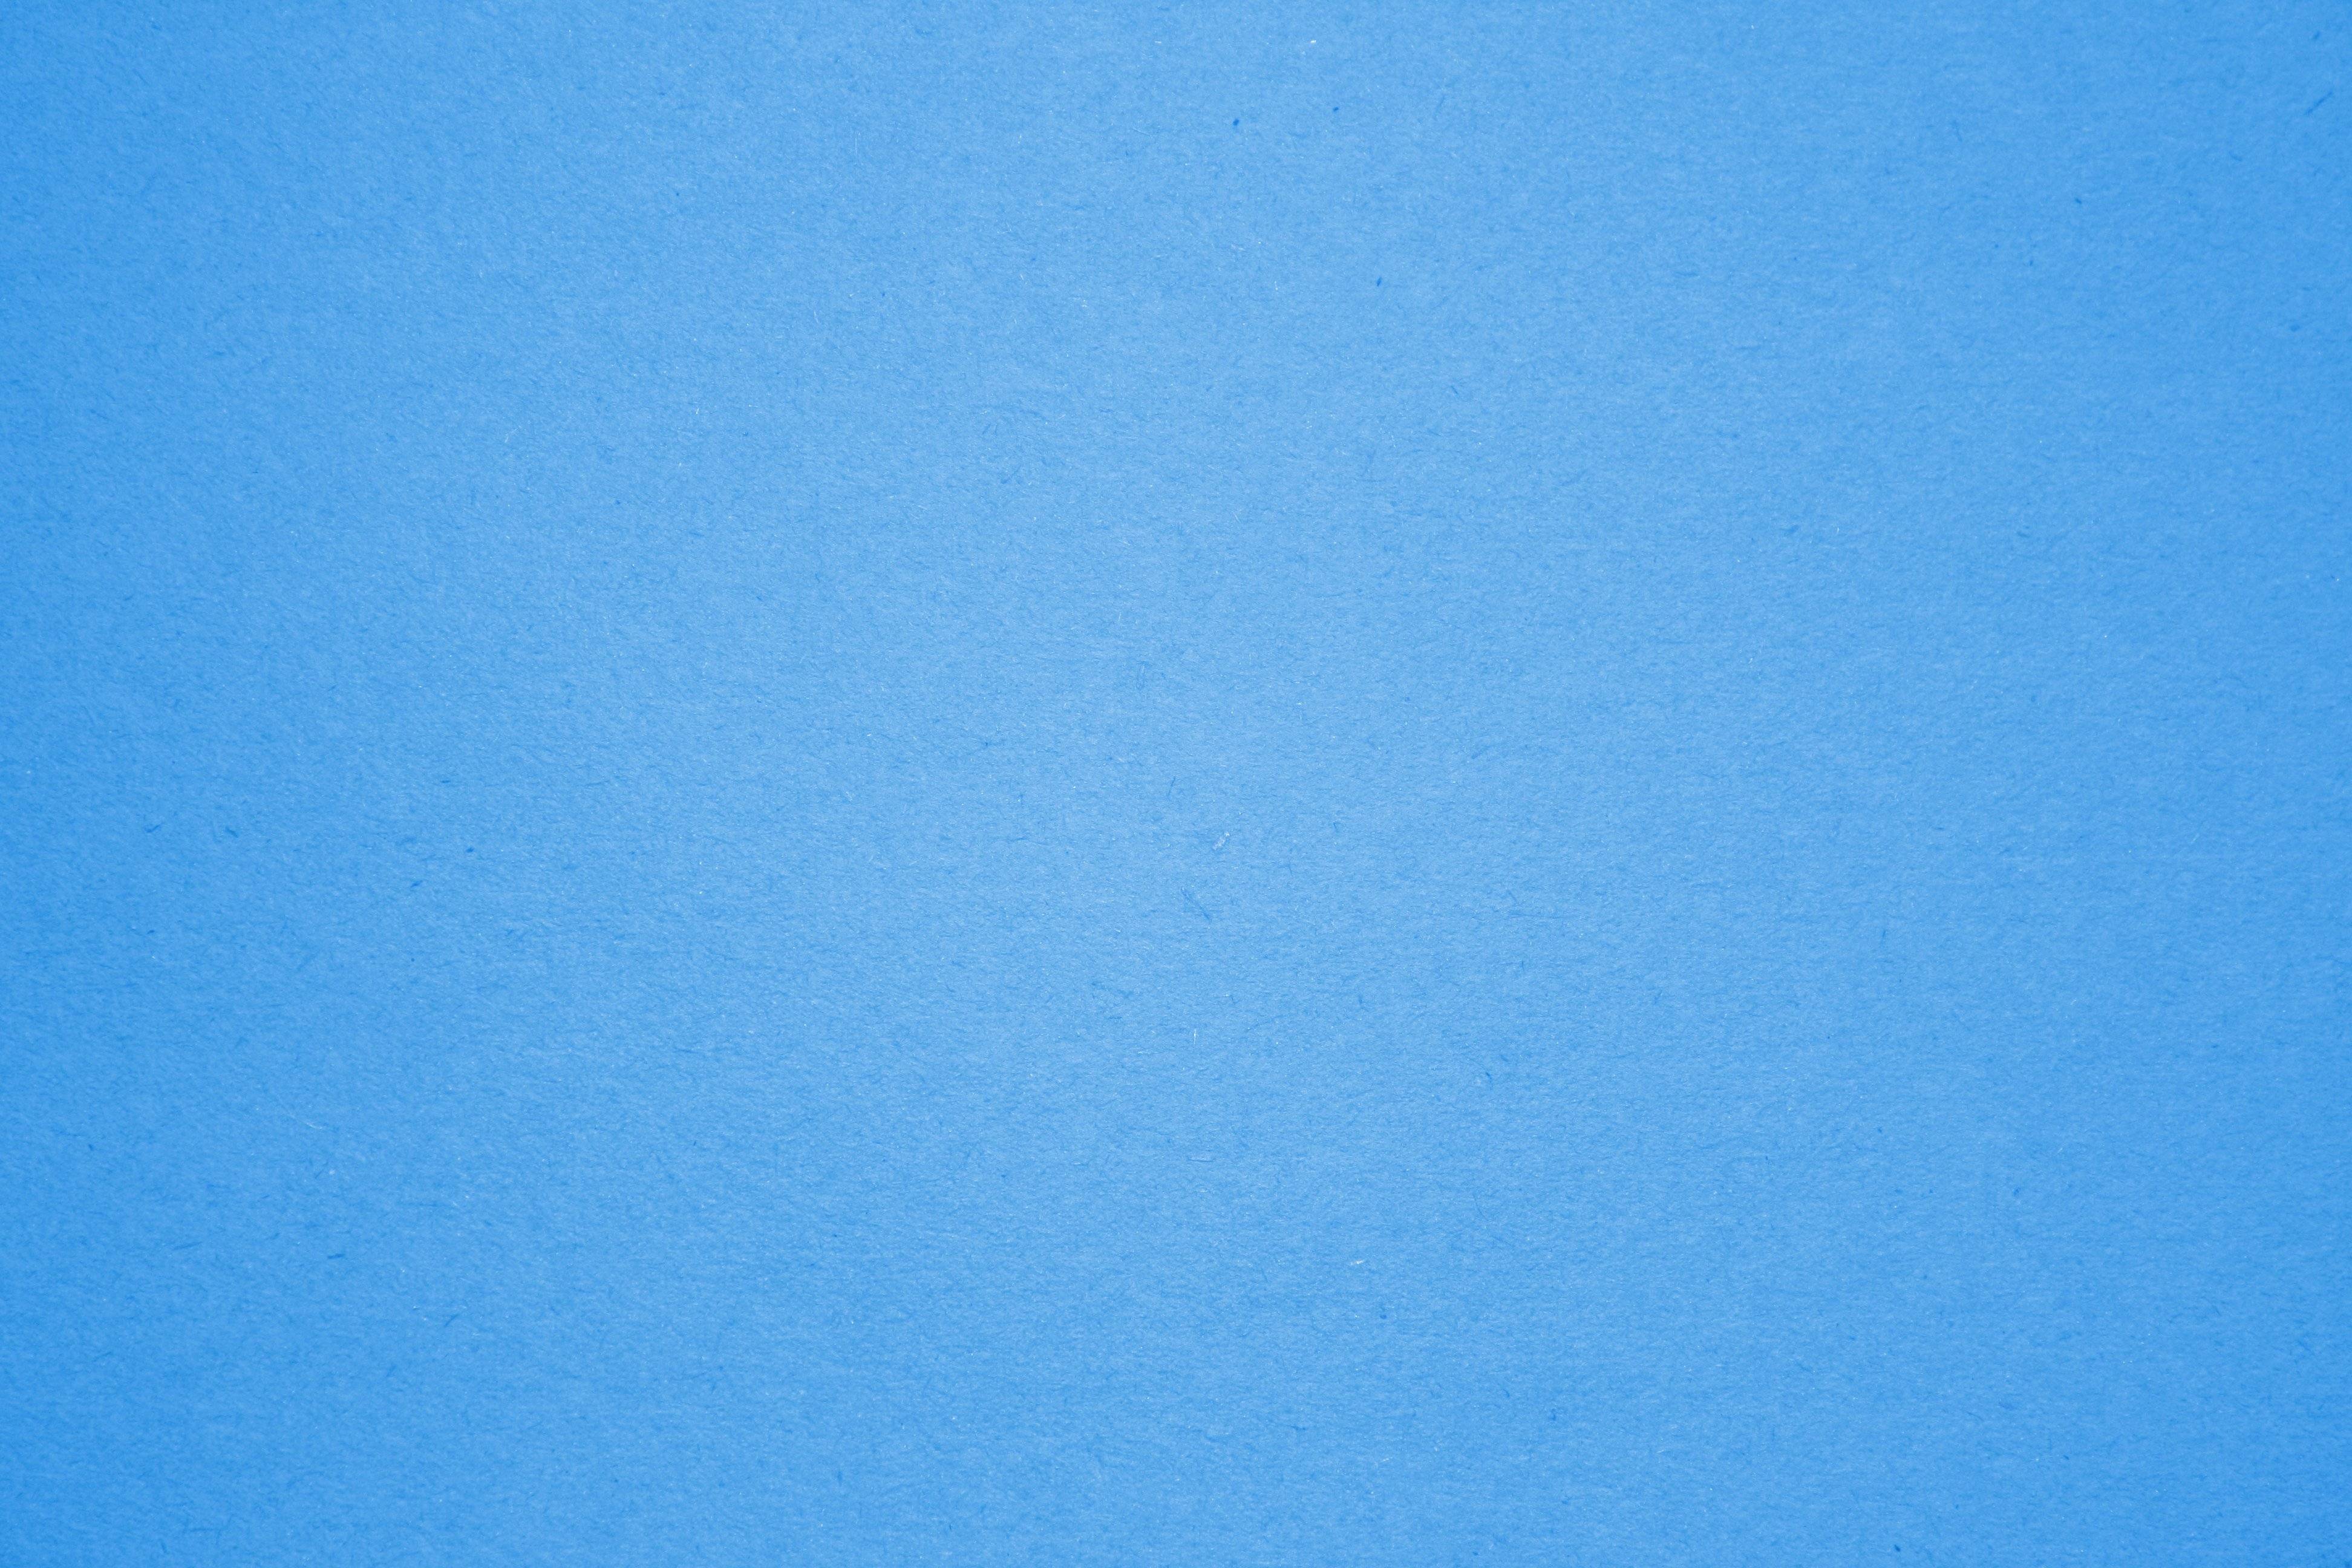 아쿠아 블루 벽지,푸른,하늘,아쿠아,터키 옥,낮